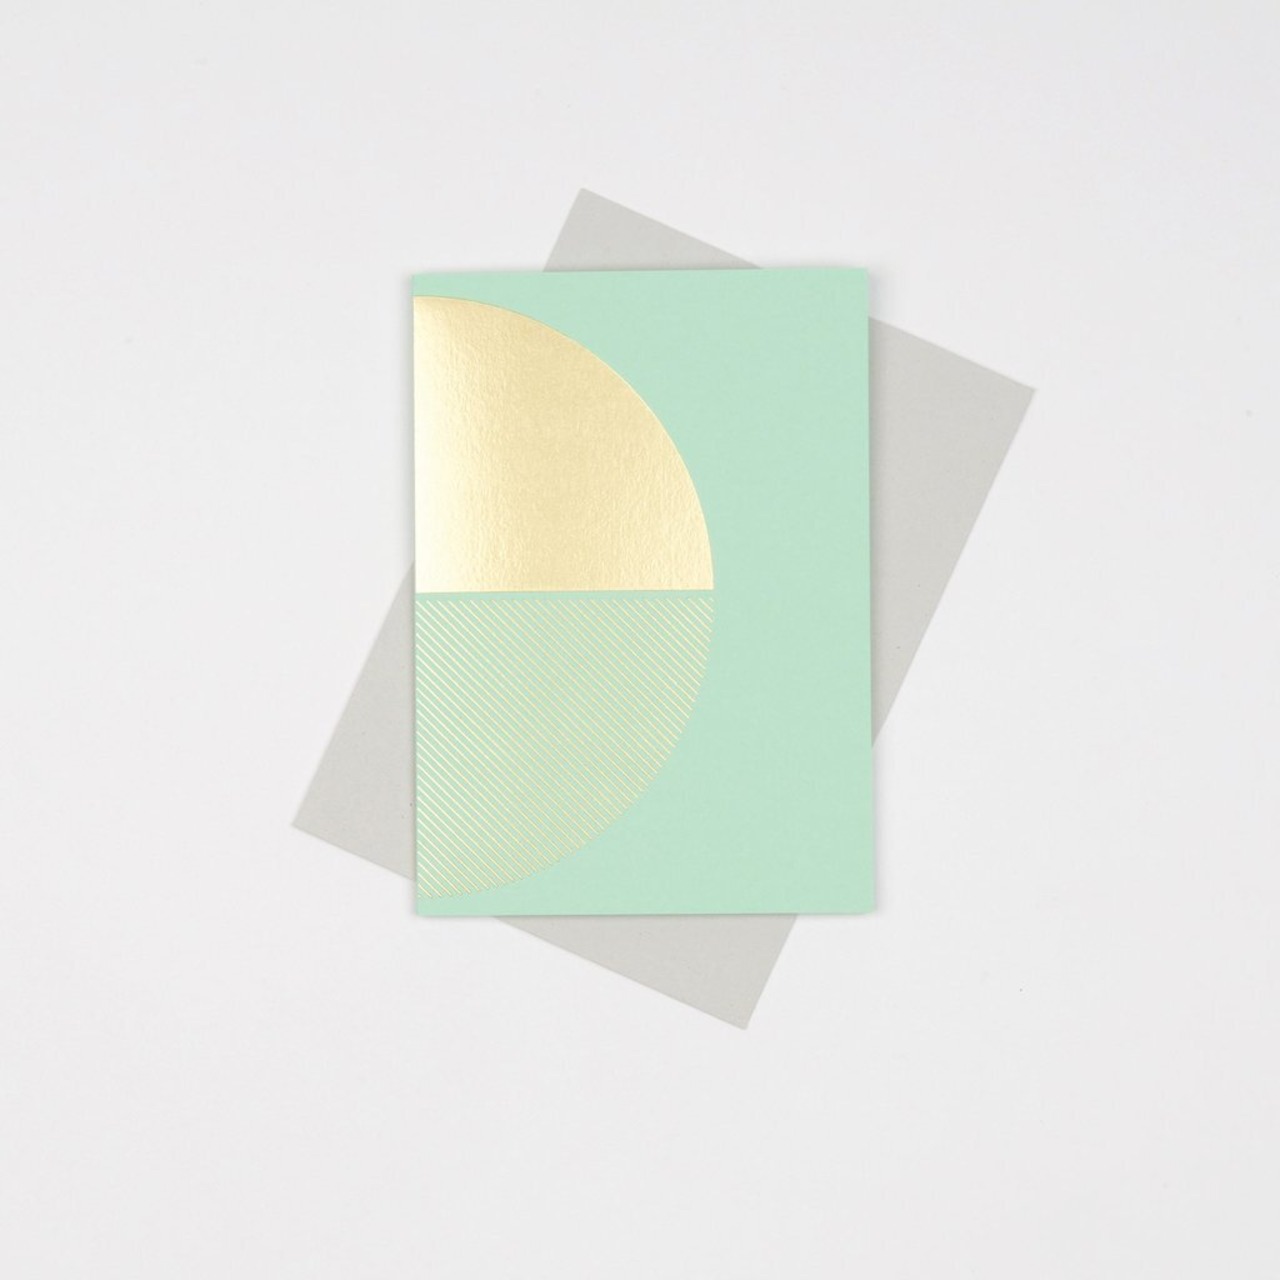 TOM PIGEON/Reflex card Brass Mint